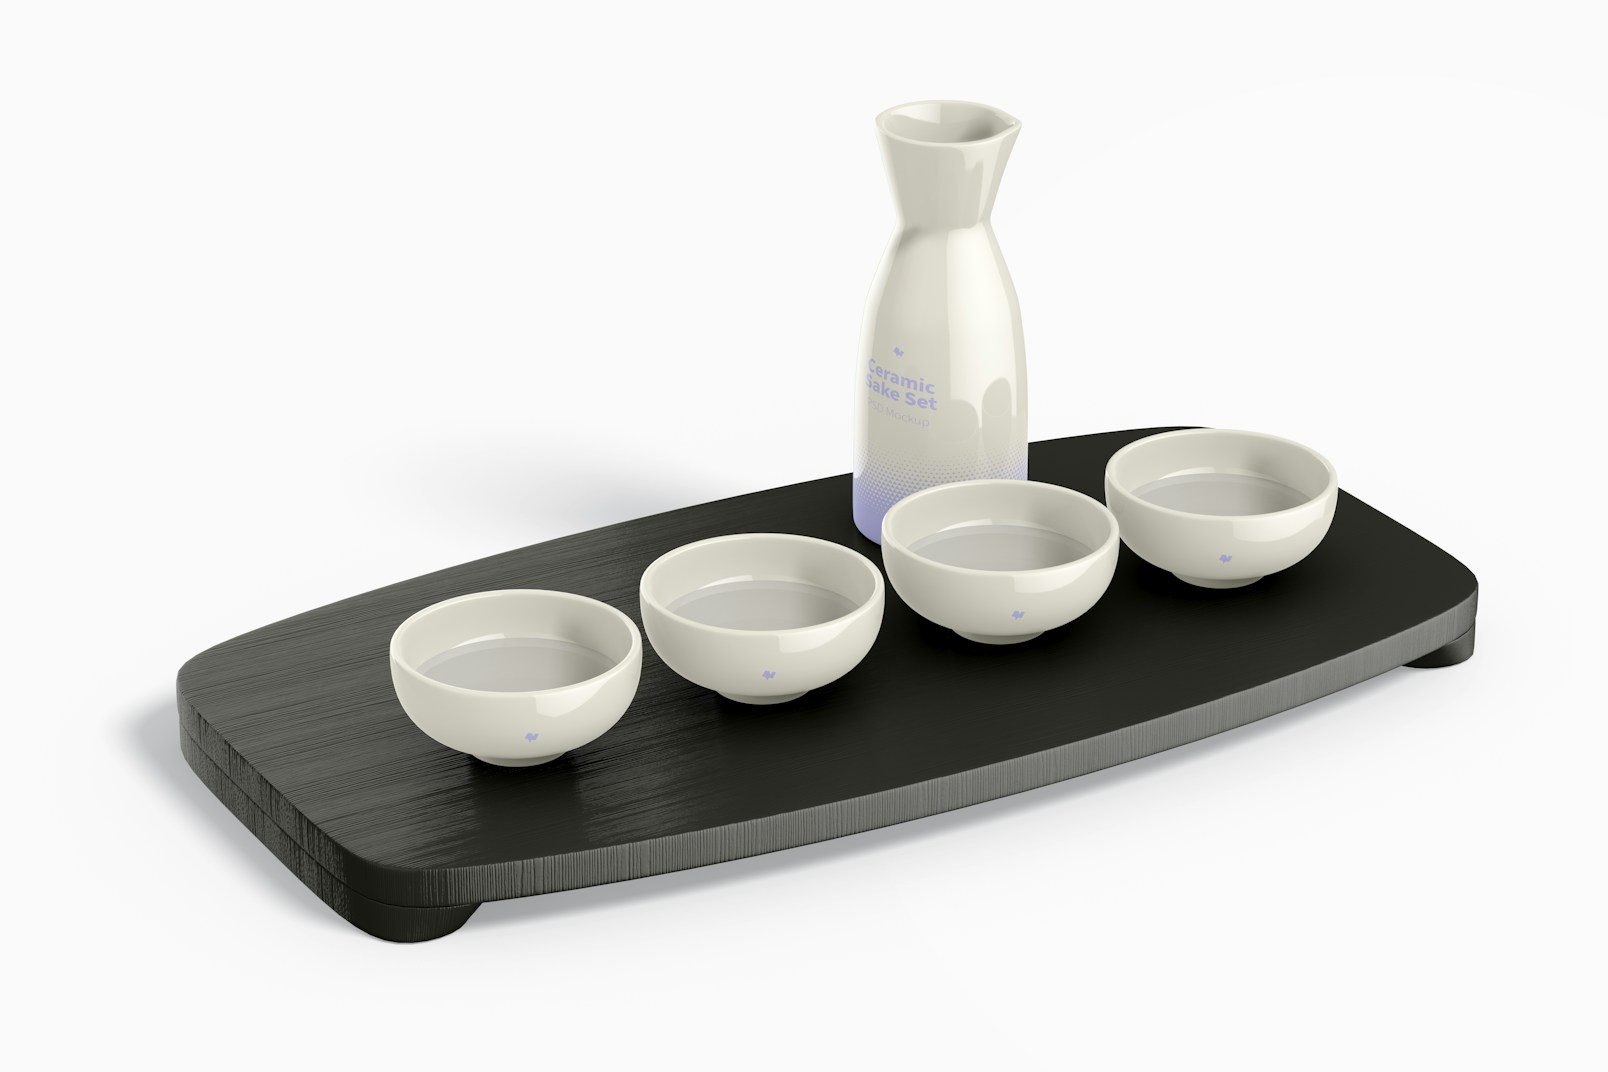 Ceramic Sake Set on Surface Mockup